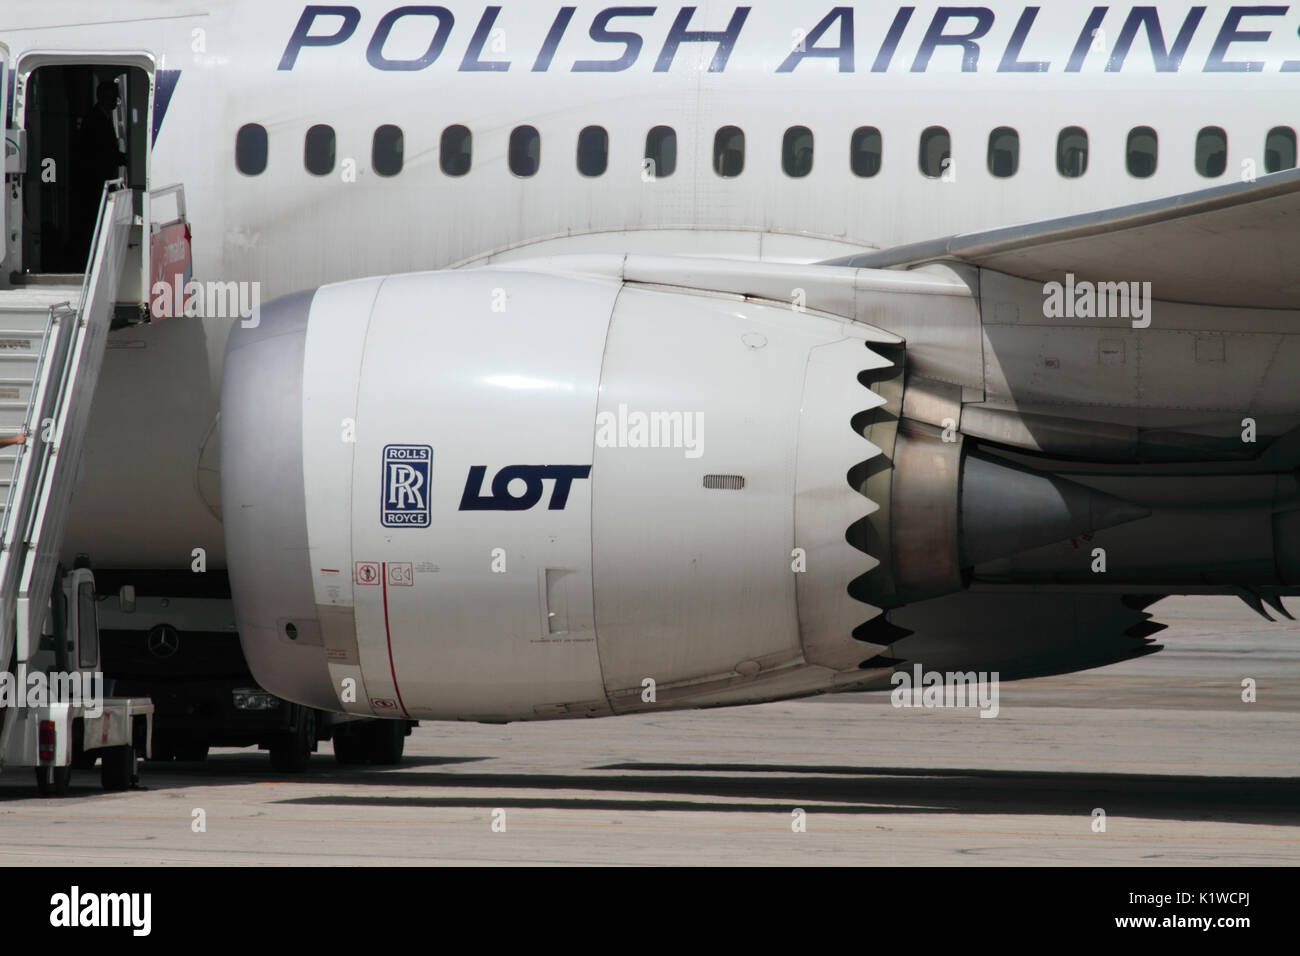 LOT Polish Airlines Boeing 787 Dreamliner fuseau moteur jet avec sa caractéristique bord cannelé. Le moteur est un turboréacteur Rolls-Royce Trent 1000. Banque D'Images